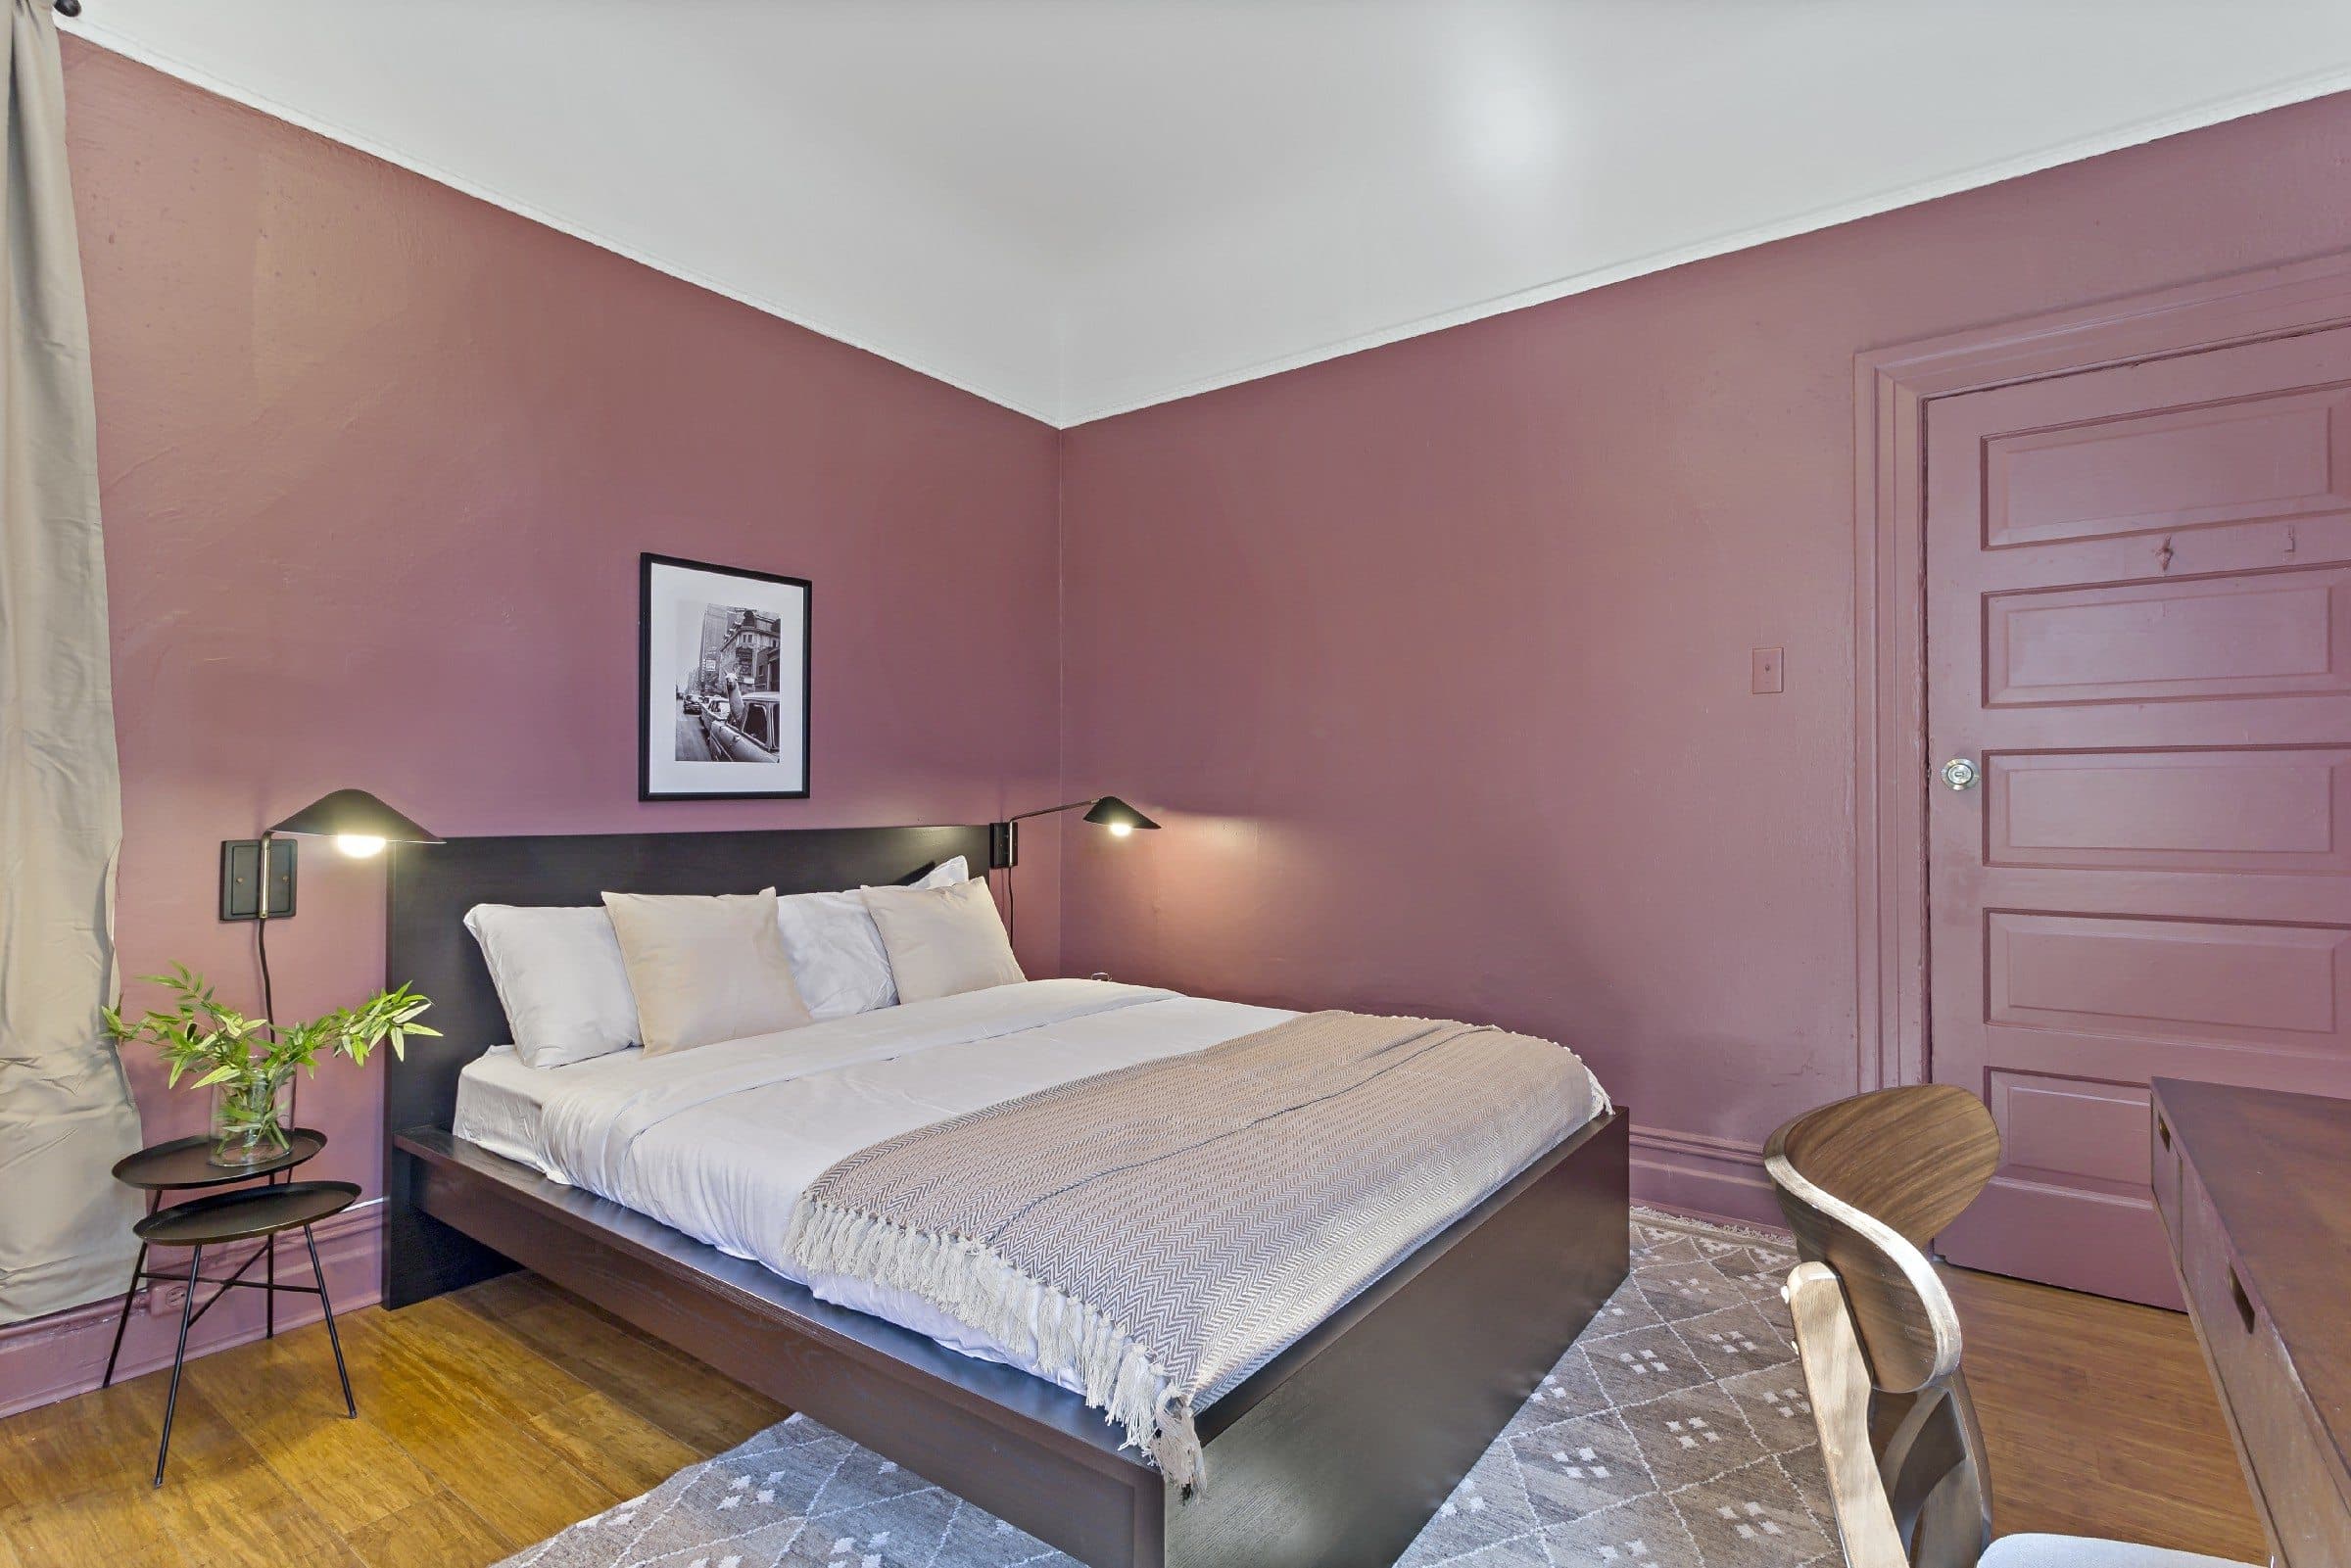 Photo 3 of #903: Queen Bedroom C at June Homes